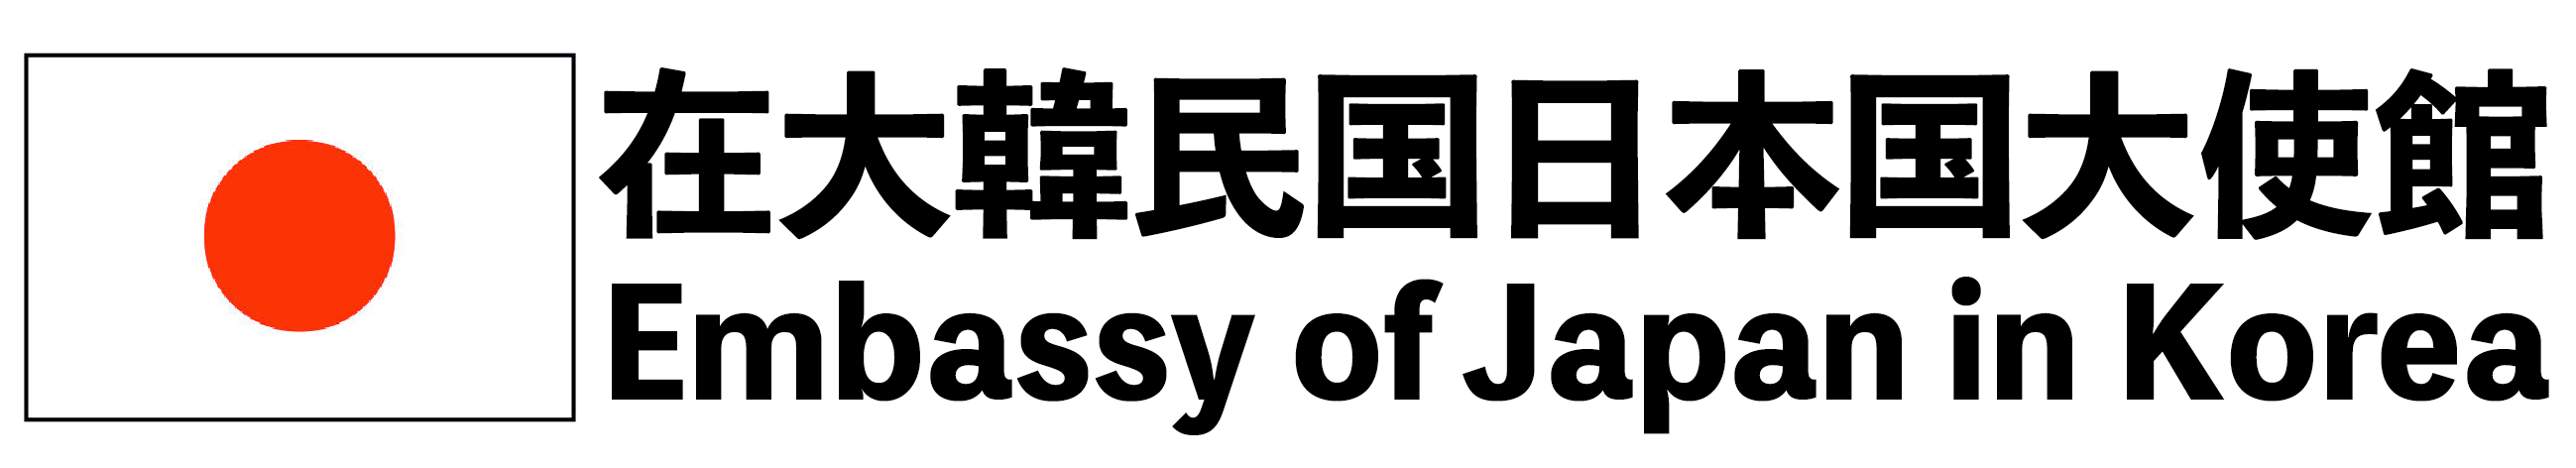 Embassy of Japan in Korea